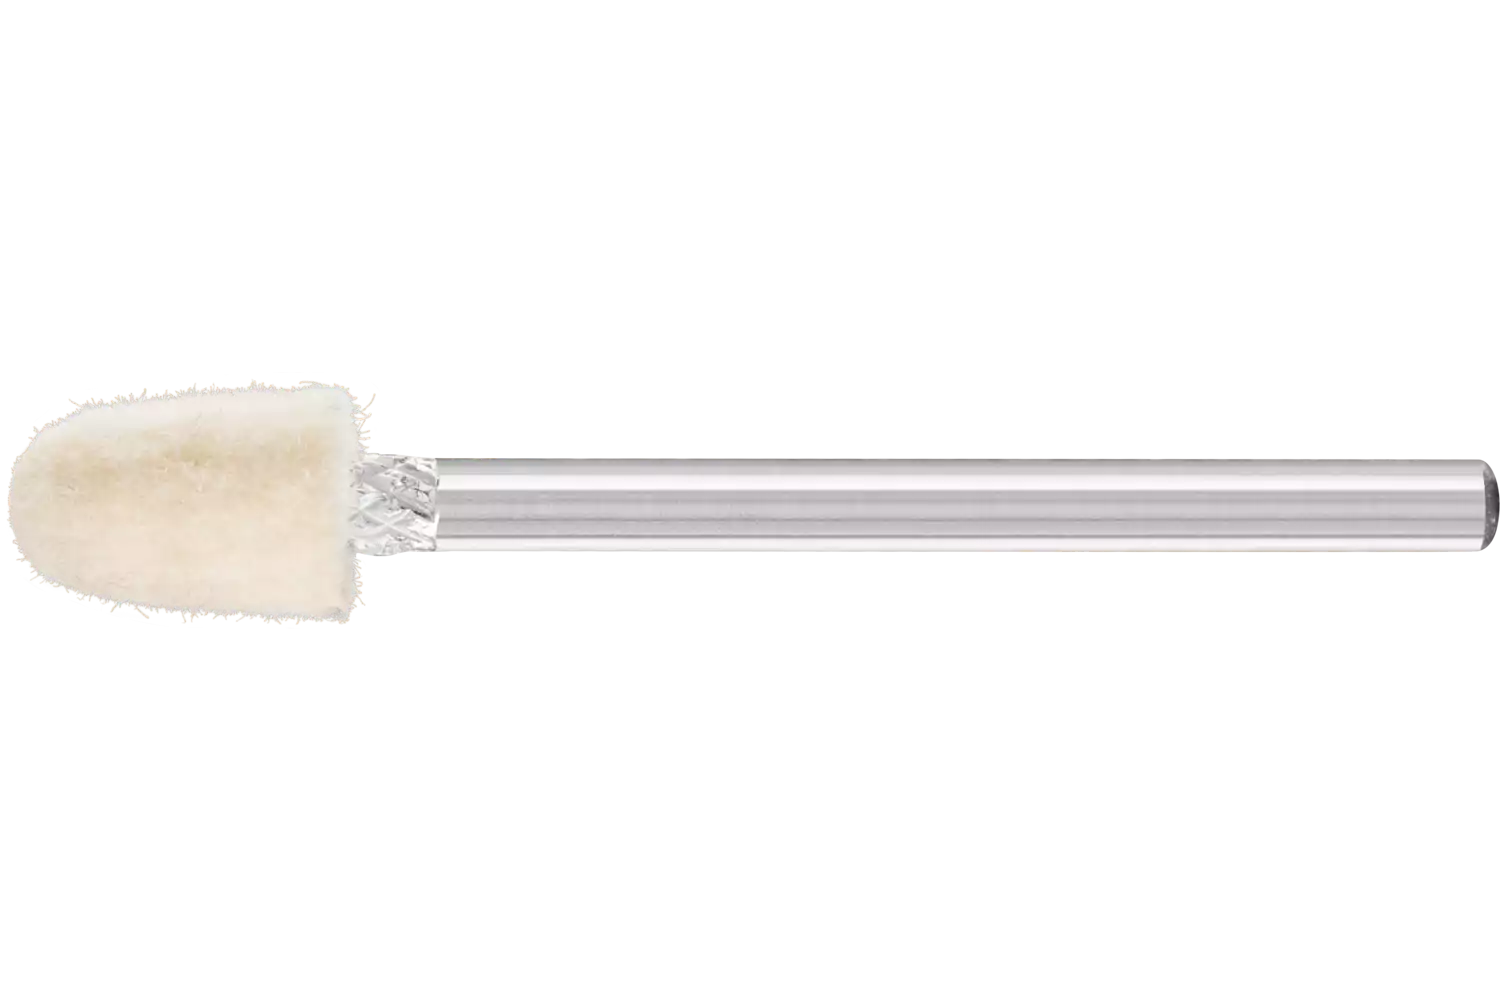 Feltri con gambo per lucidare medio-duri forma a cono Ø 6x10 mm, gambo Ø 3 mm 1